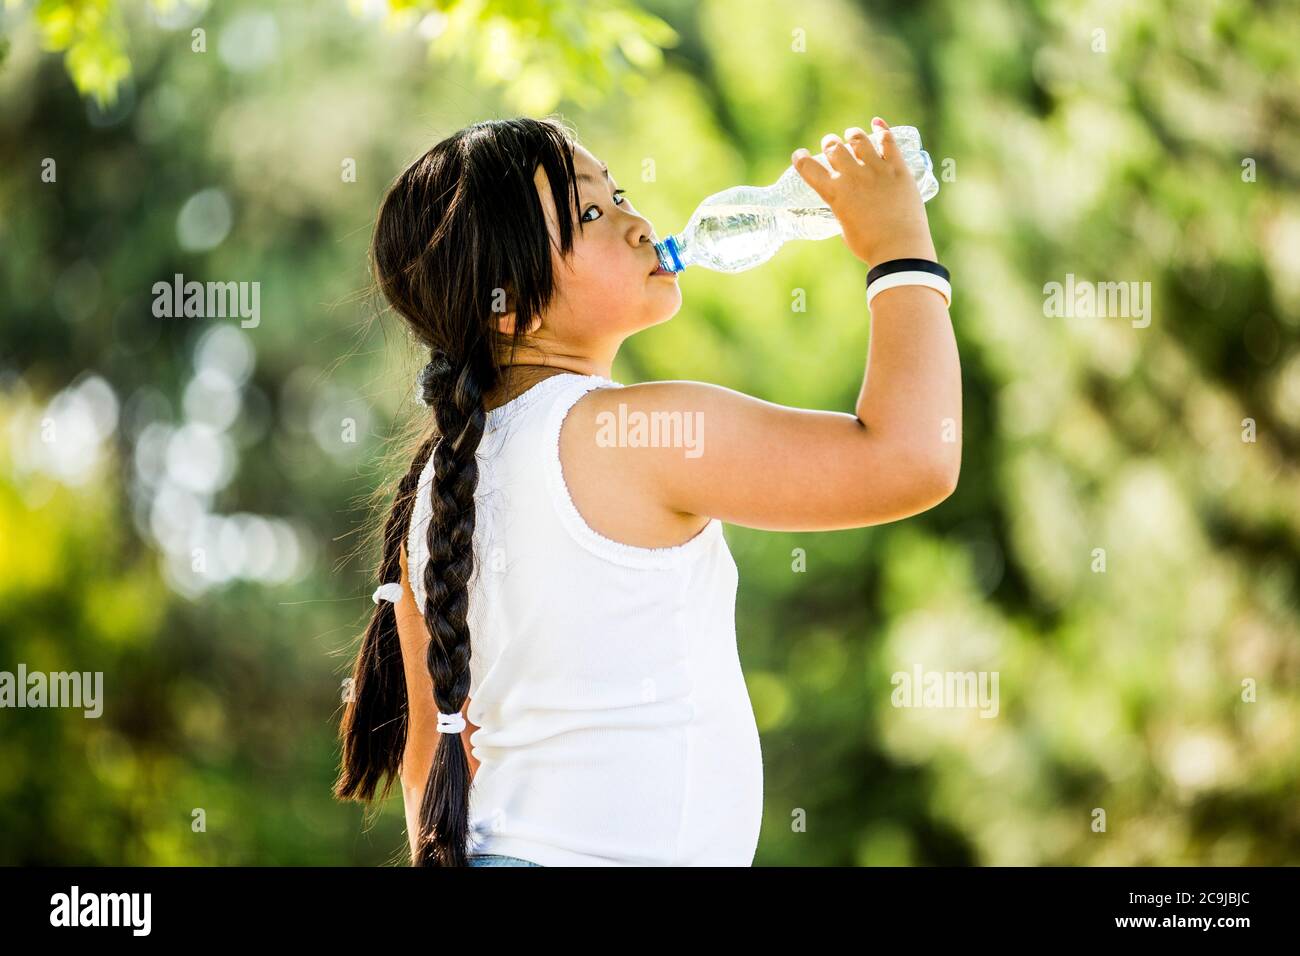 Ragazza che beve acqua da bottiglia di plastica in parco, ritratto. Foto Stock